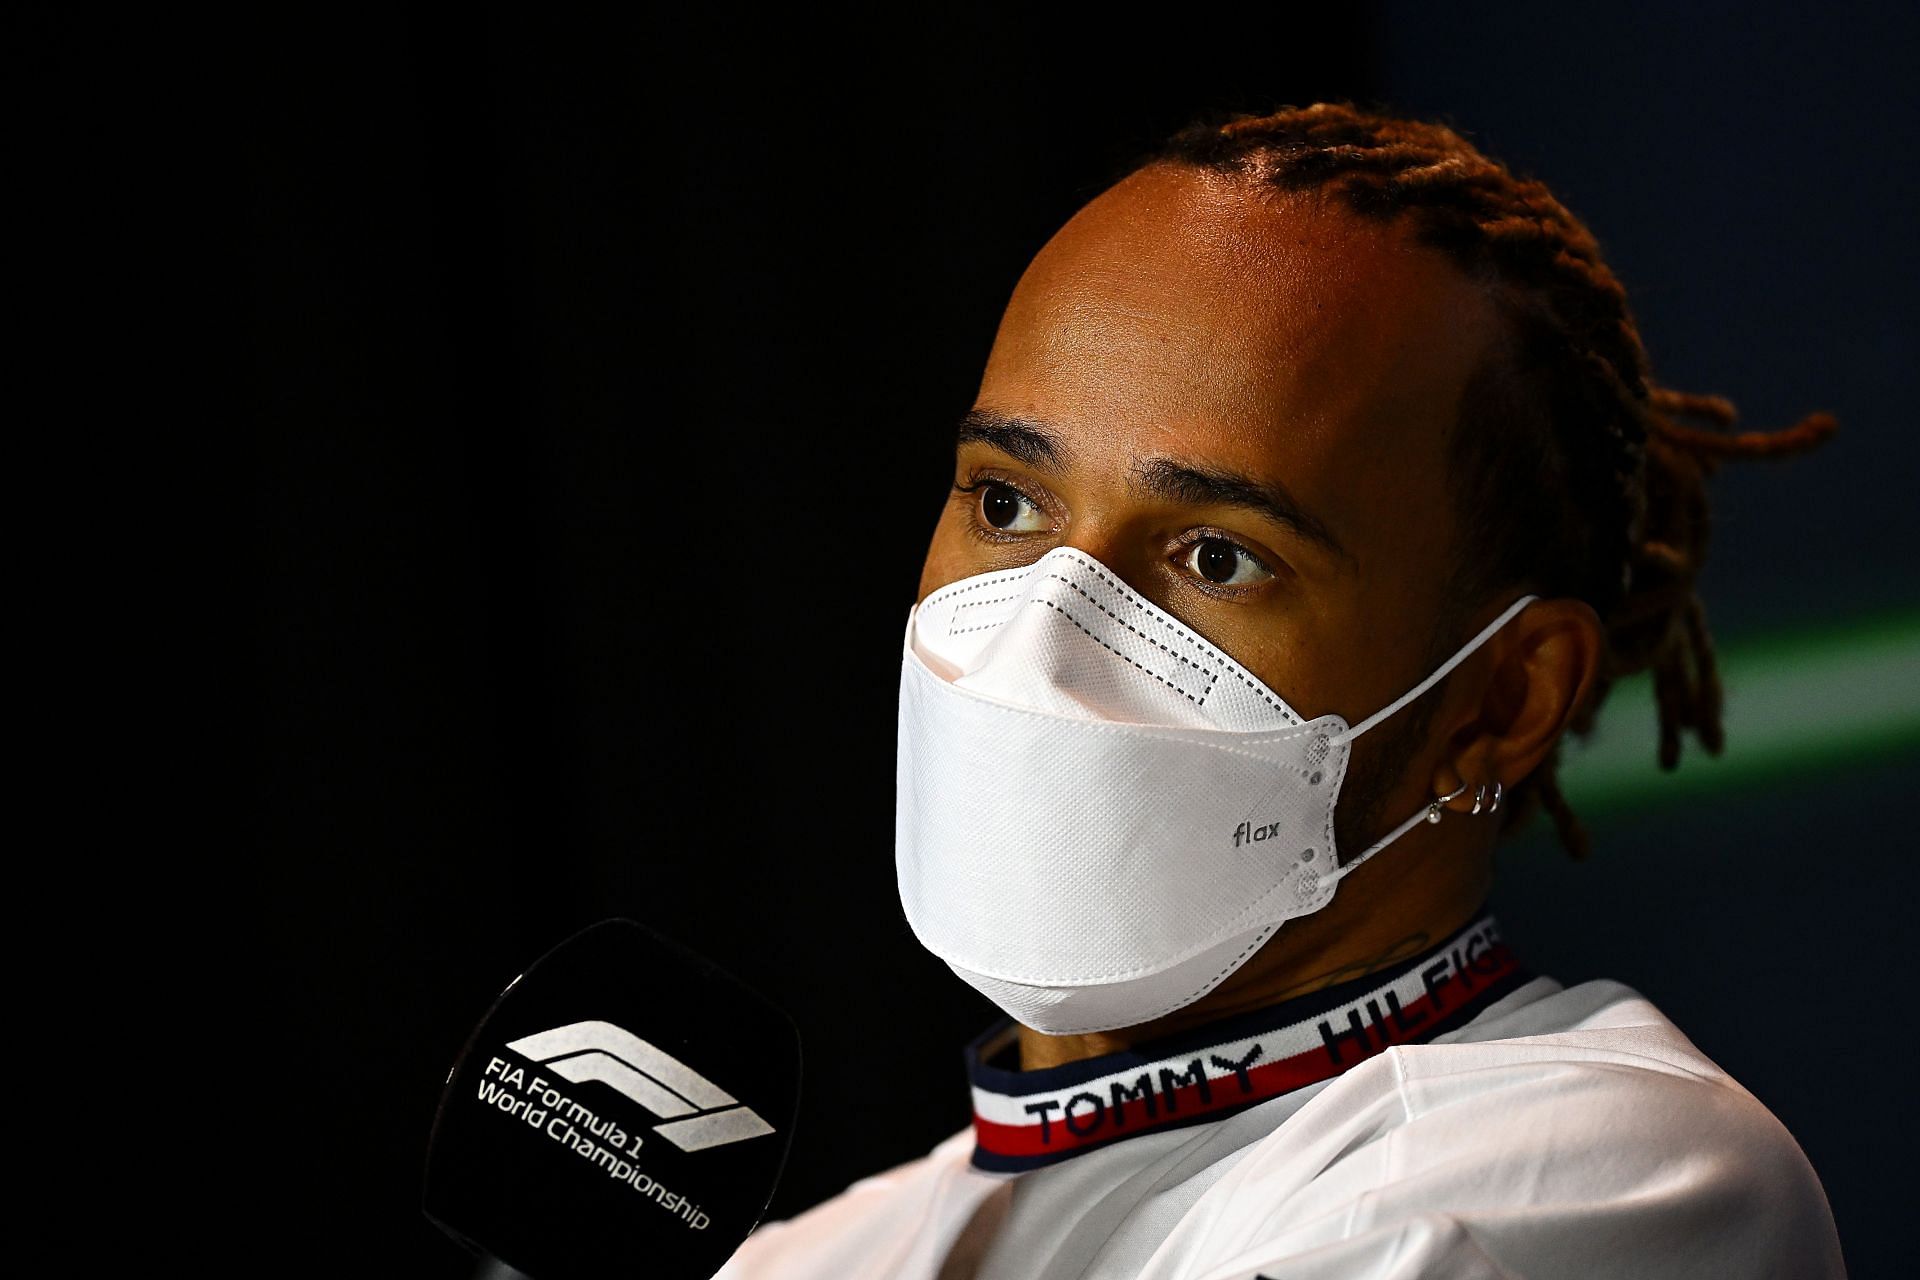 F1 Grand Prix of Saudi Arabia - Practice - Lewis Hamilton speaks in Jeddah